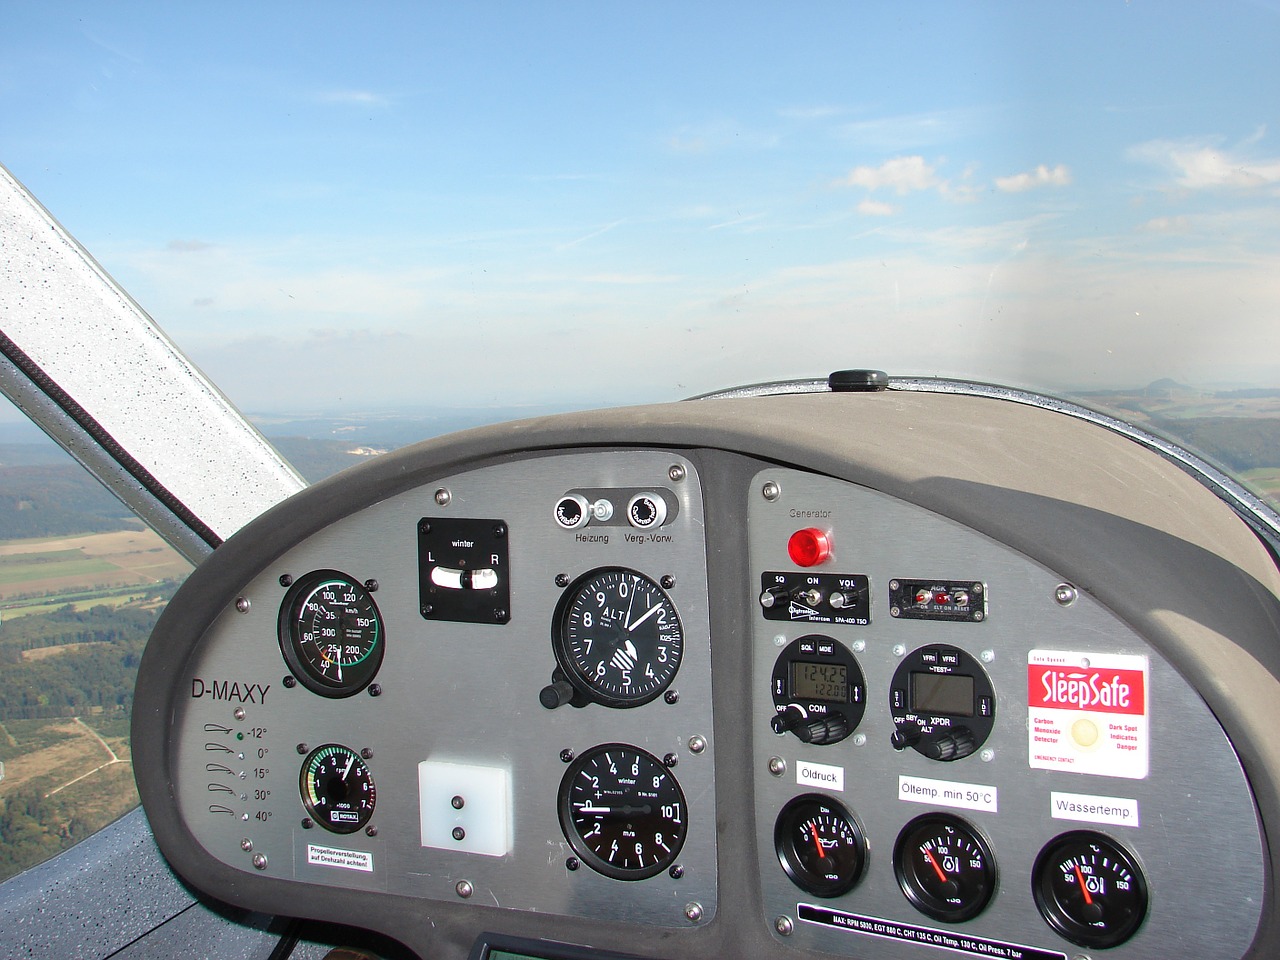 Simulateur de vol, Aéroclub-Réunion